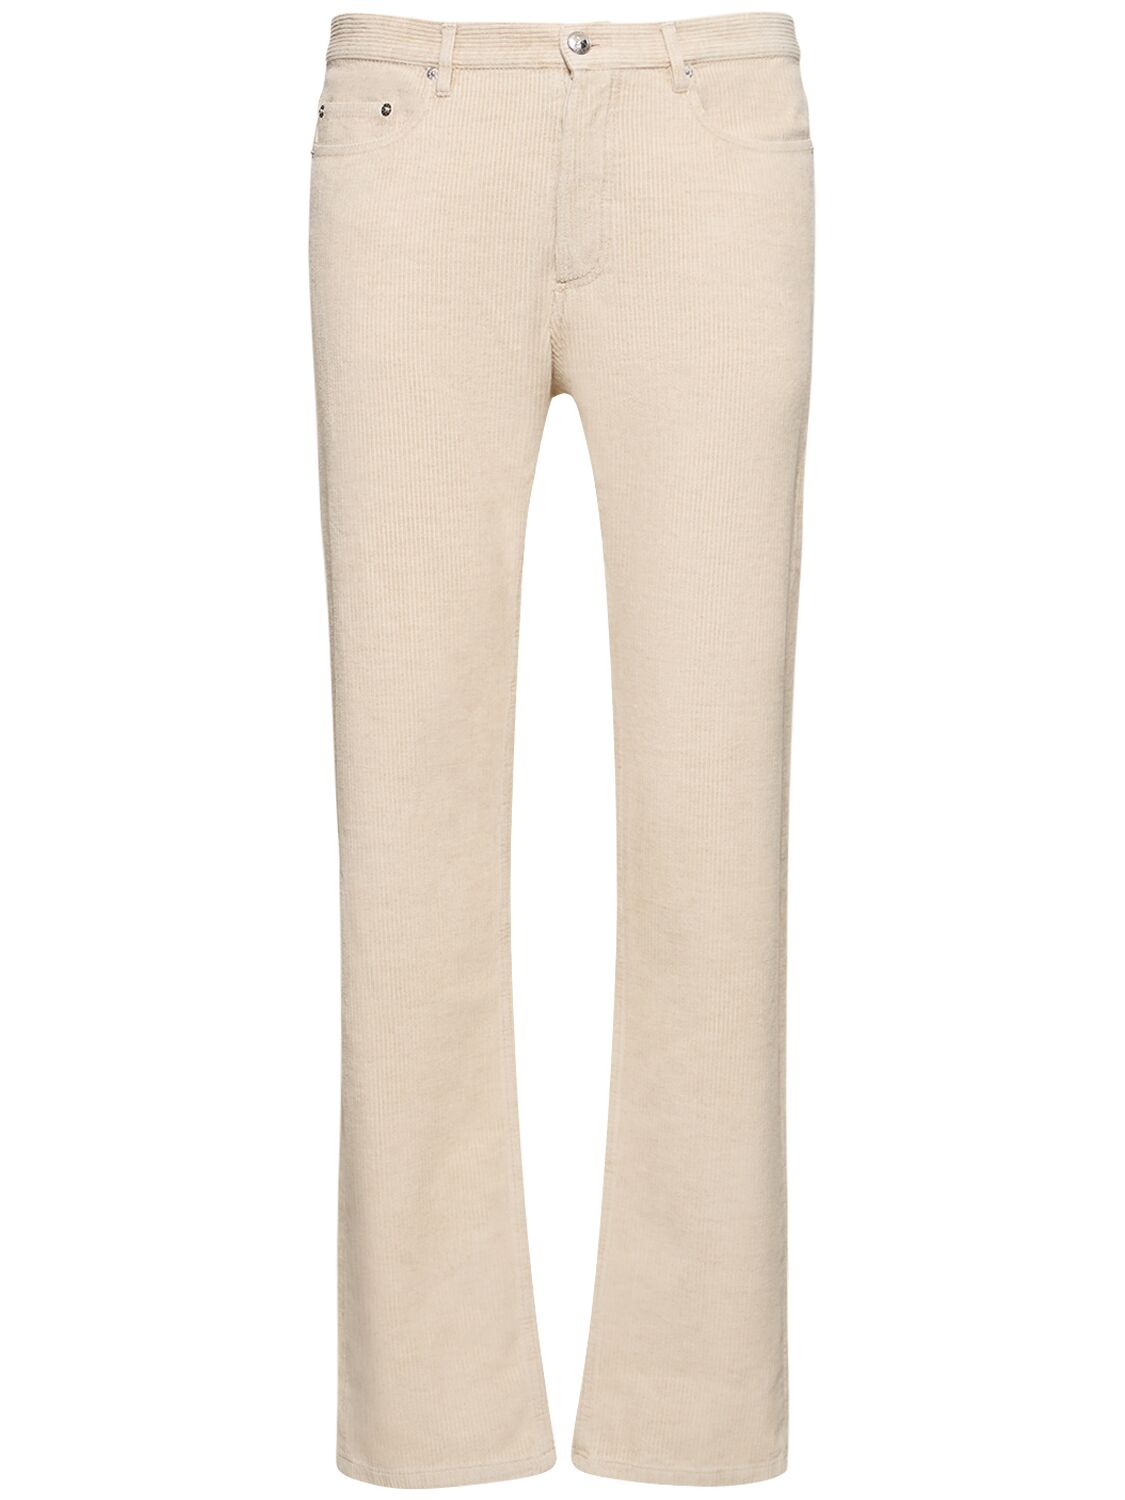 Image of Cotton & Linen Corduroy Pants